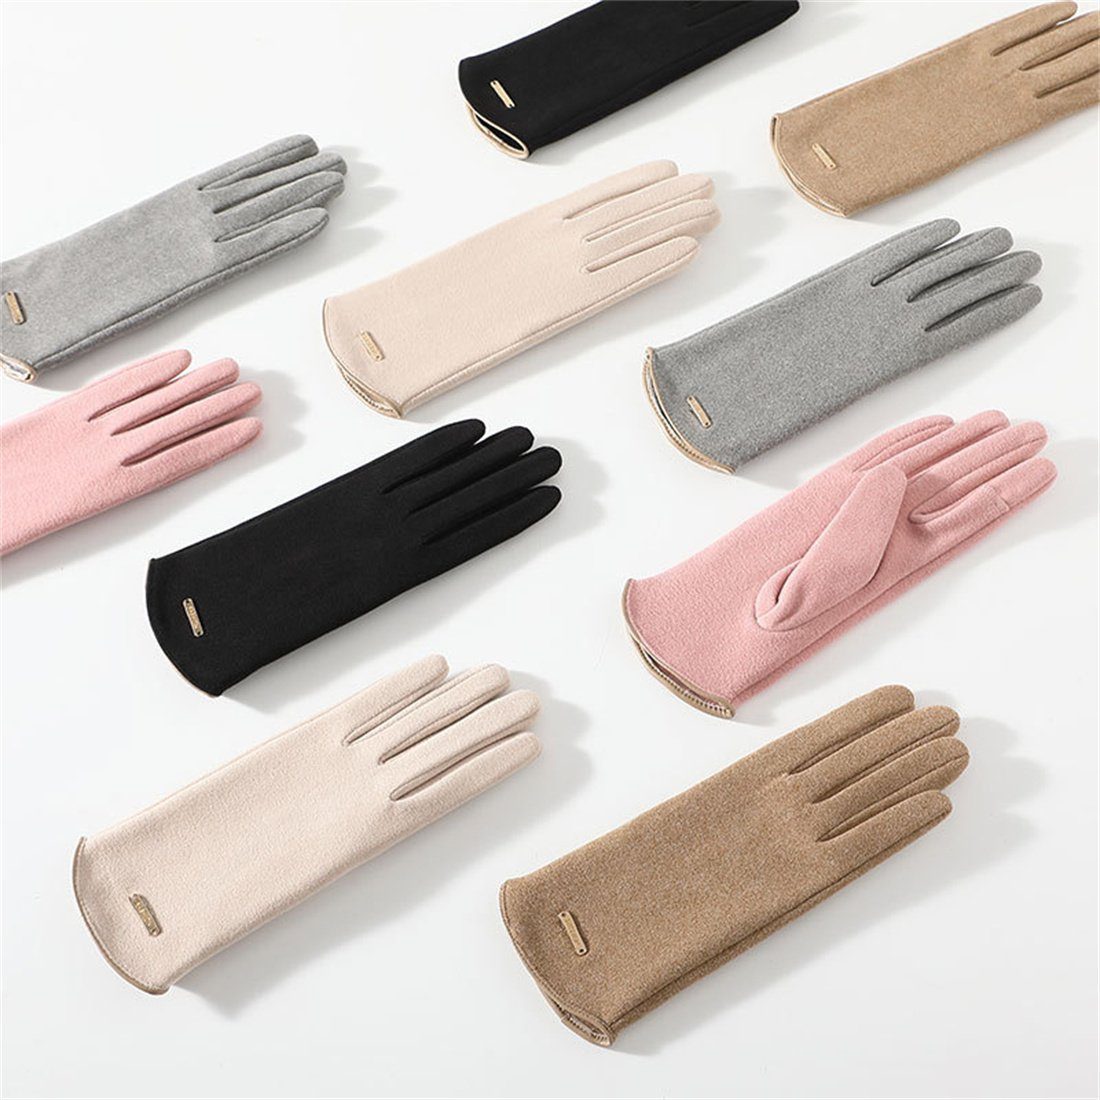 Touch Gloves,Reiten Fleecehandschuhe Women's DÖRÖY Screen Winter Padded Warme Rosa Handschuhe